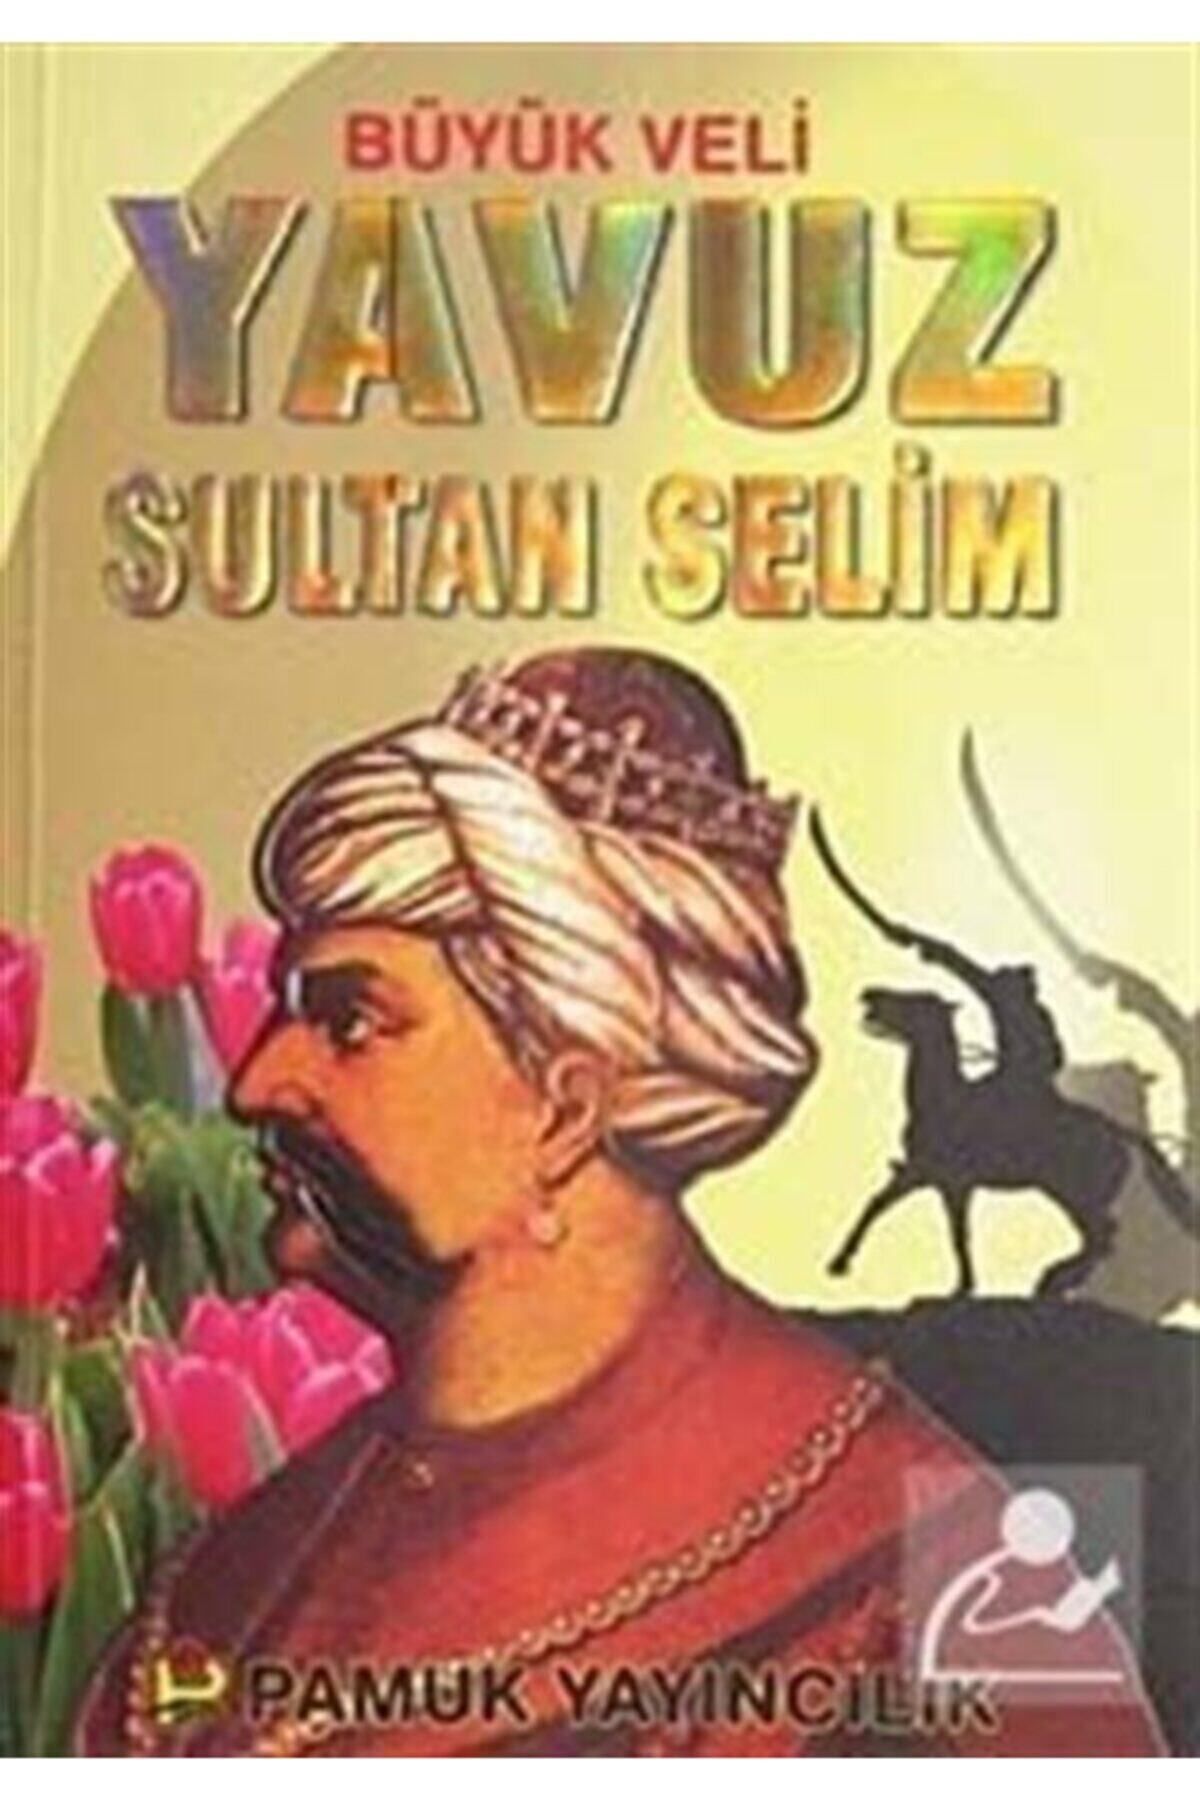 Pamuk Yayıncılık Büyük Veli Yavuz Sultan Selim (Evliya-008)